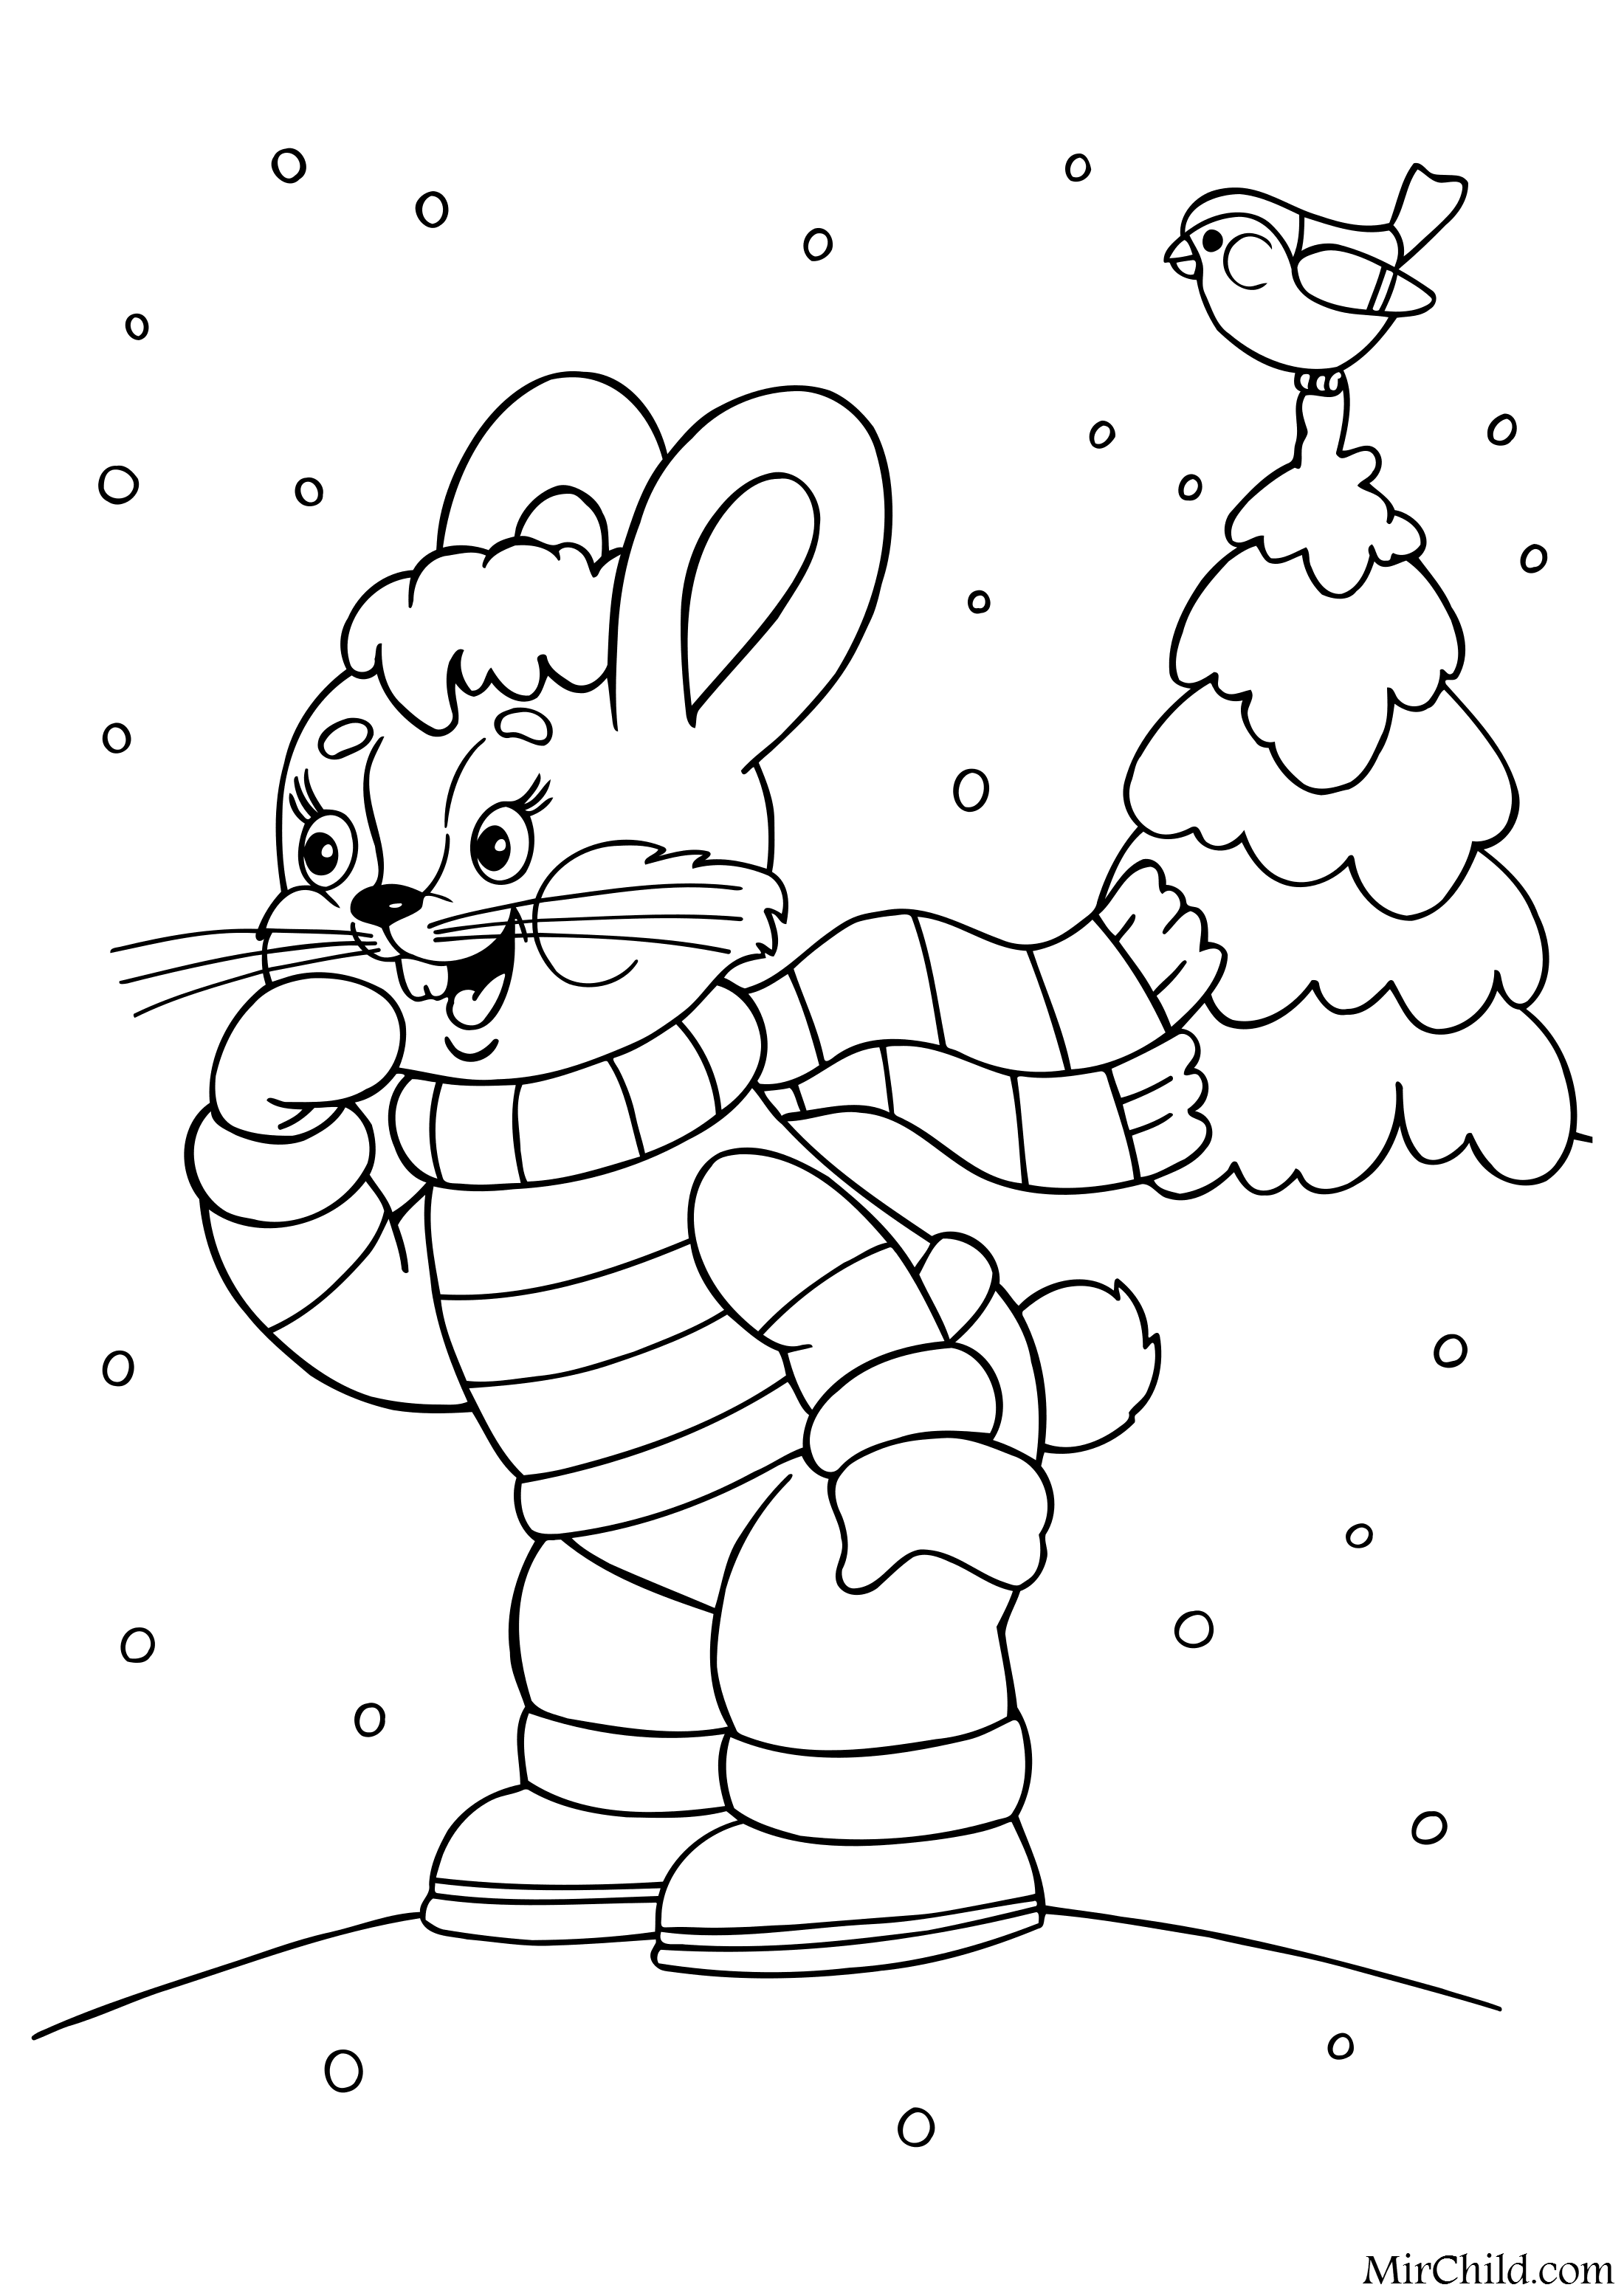 новогодний кролик раскраска для детей распечатать бесплатно 8